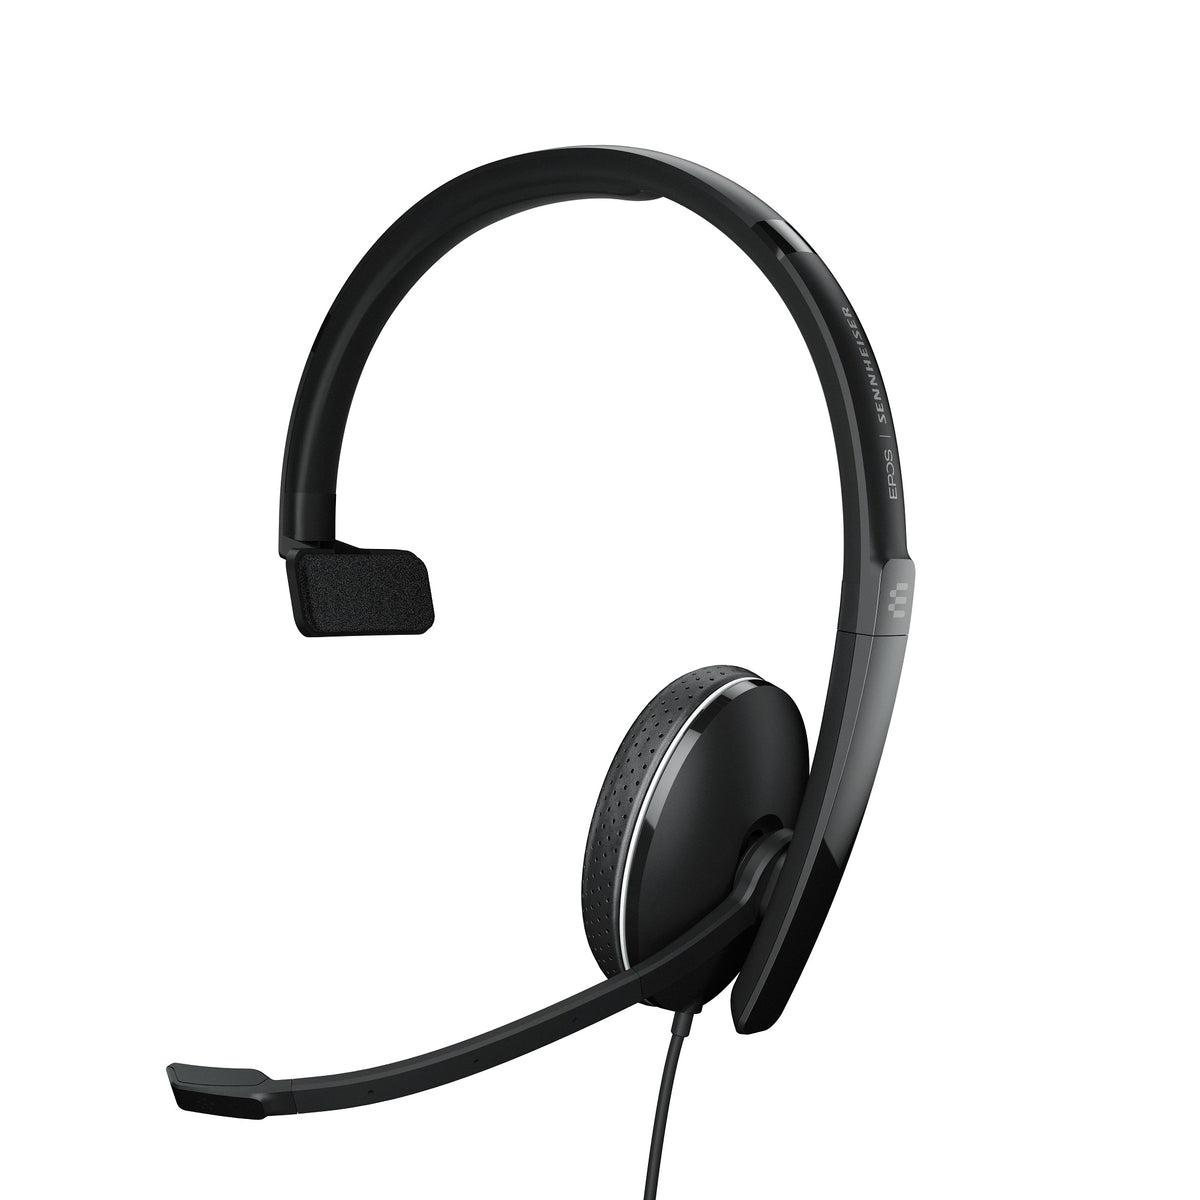 Headset EPOS SENNHEISER ADAPT 135 USB II Mono Black Headphones